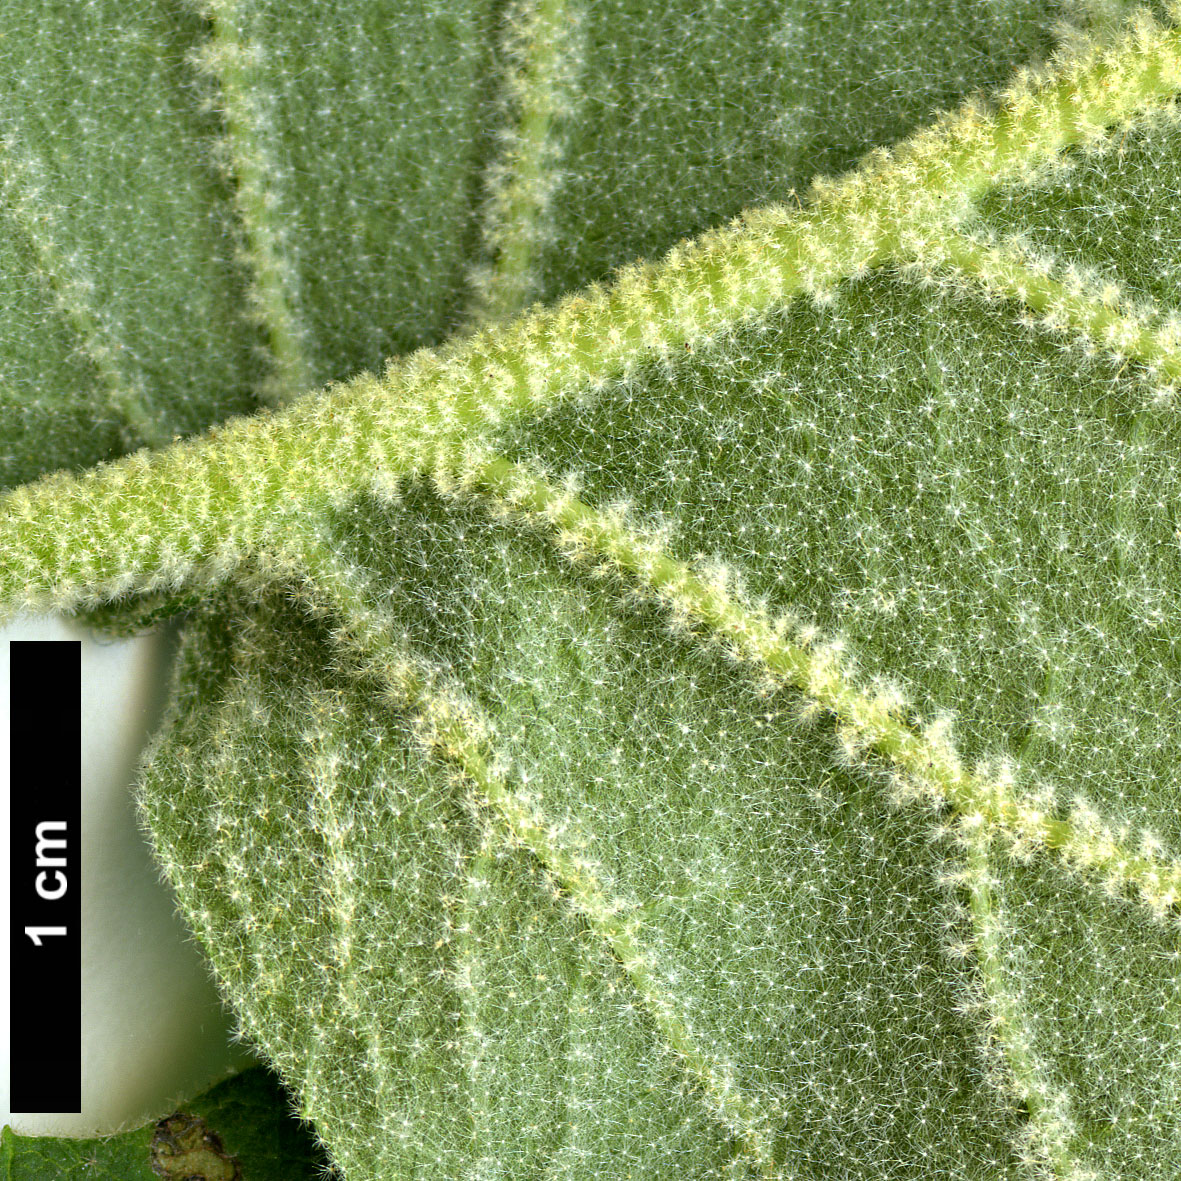 High resolution image: Family: Adoxaceae - Genus: Viburnum - Taxon: glomeratum - SpeciesSub: subsp. magnificum